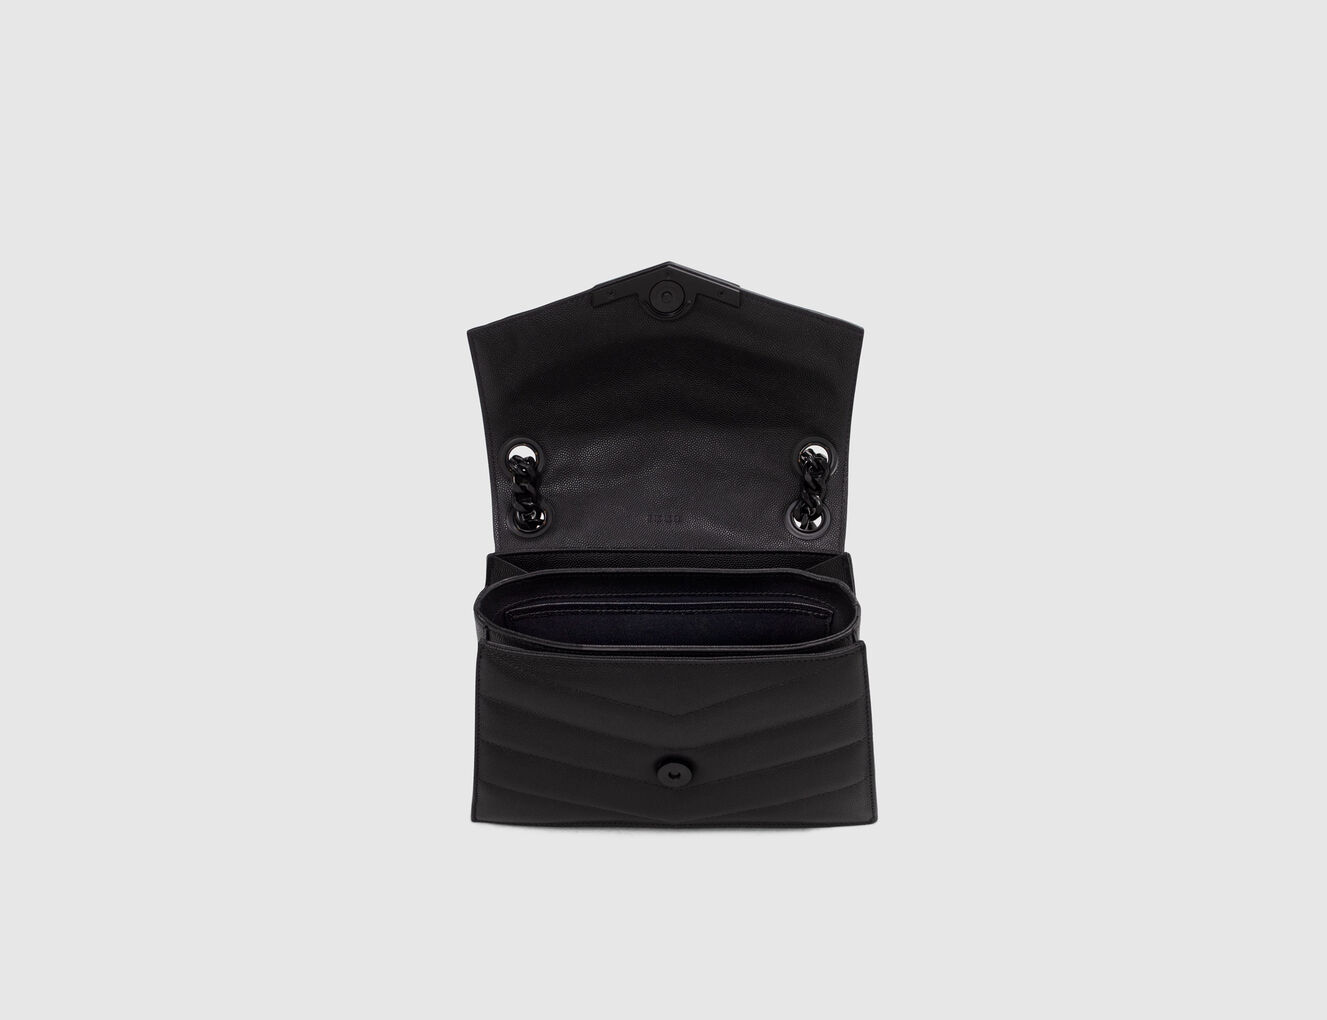 Damentasche THE 1 aus schwarzem Leder Größe S - IKKS-5